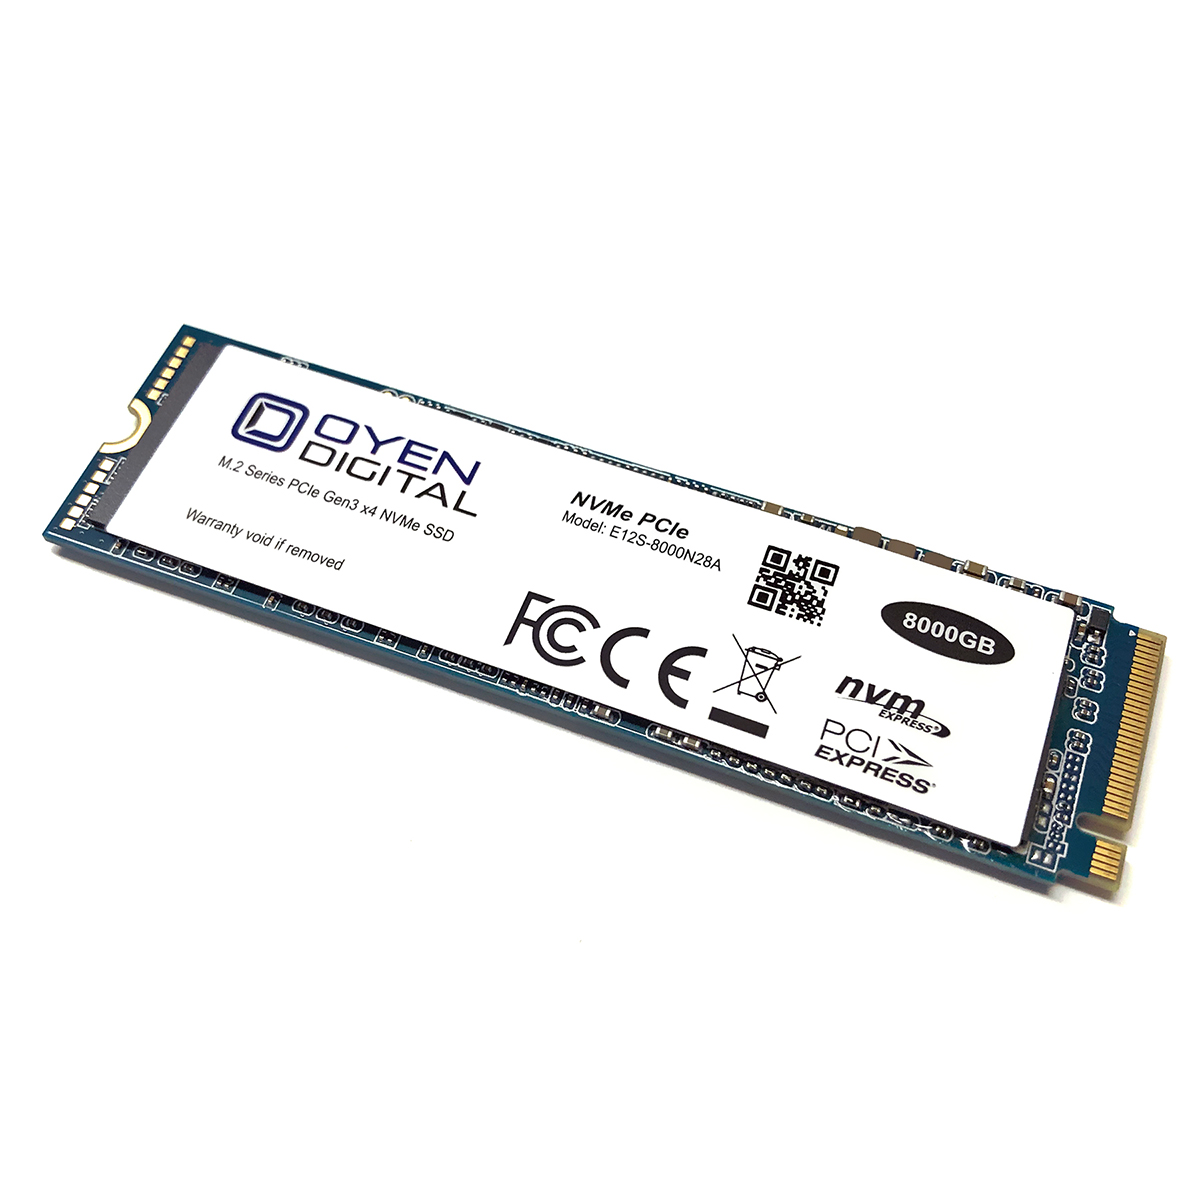 Oyen Dash Pro 8TB M.2 2280 NVMe PCIe 3D SSD